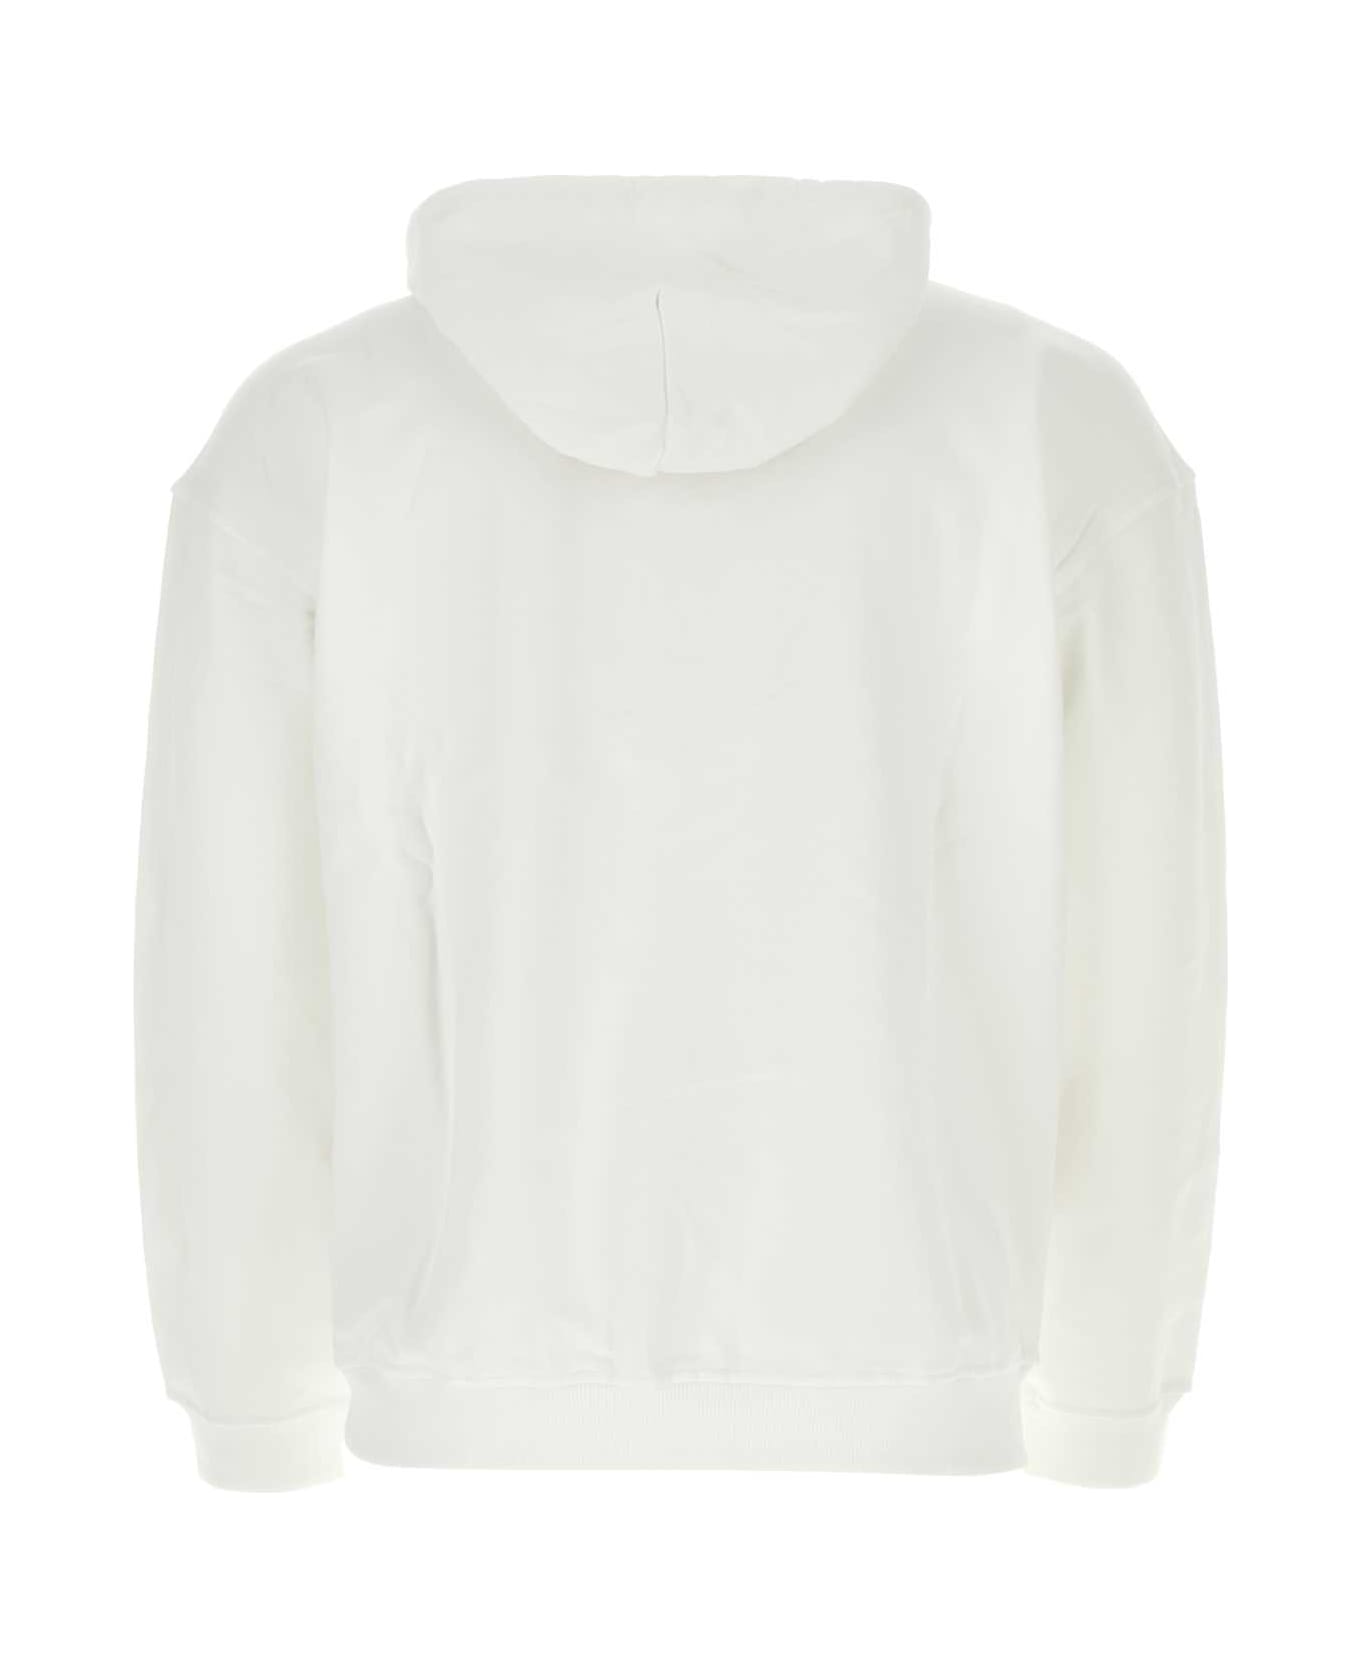 Diesel White Cotton Sweatshirt - 100